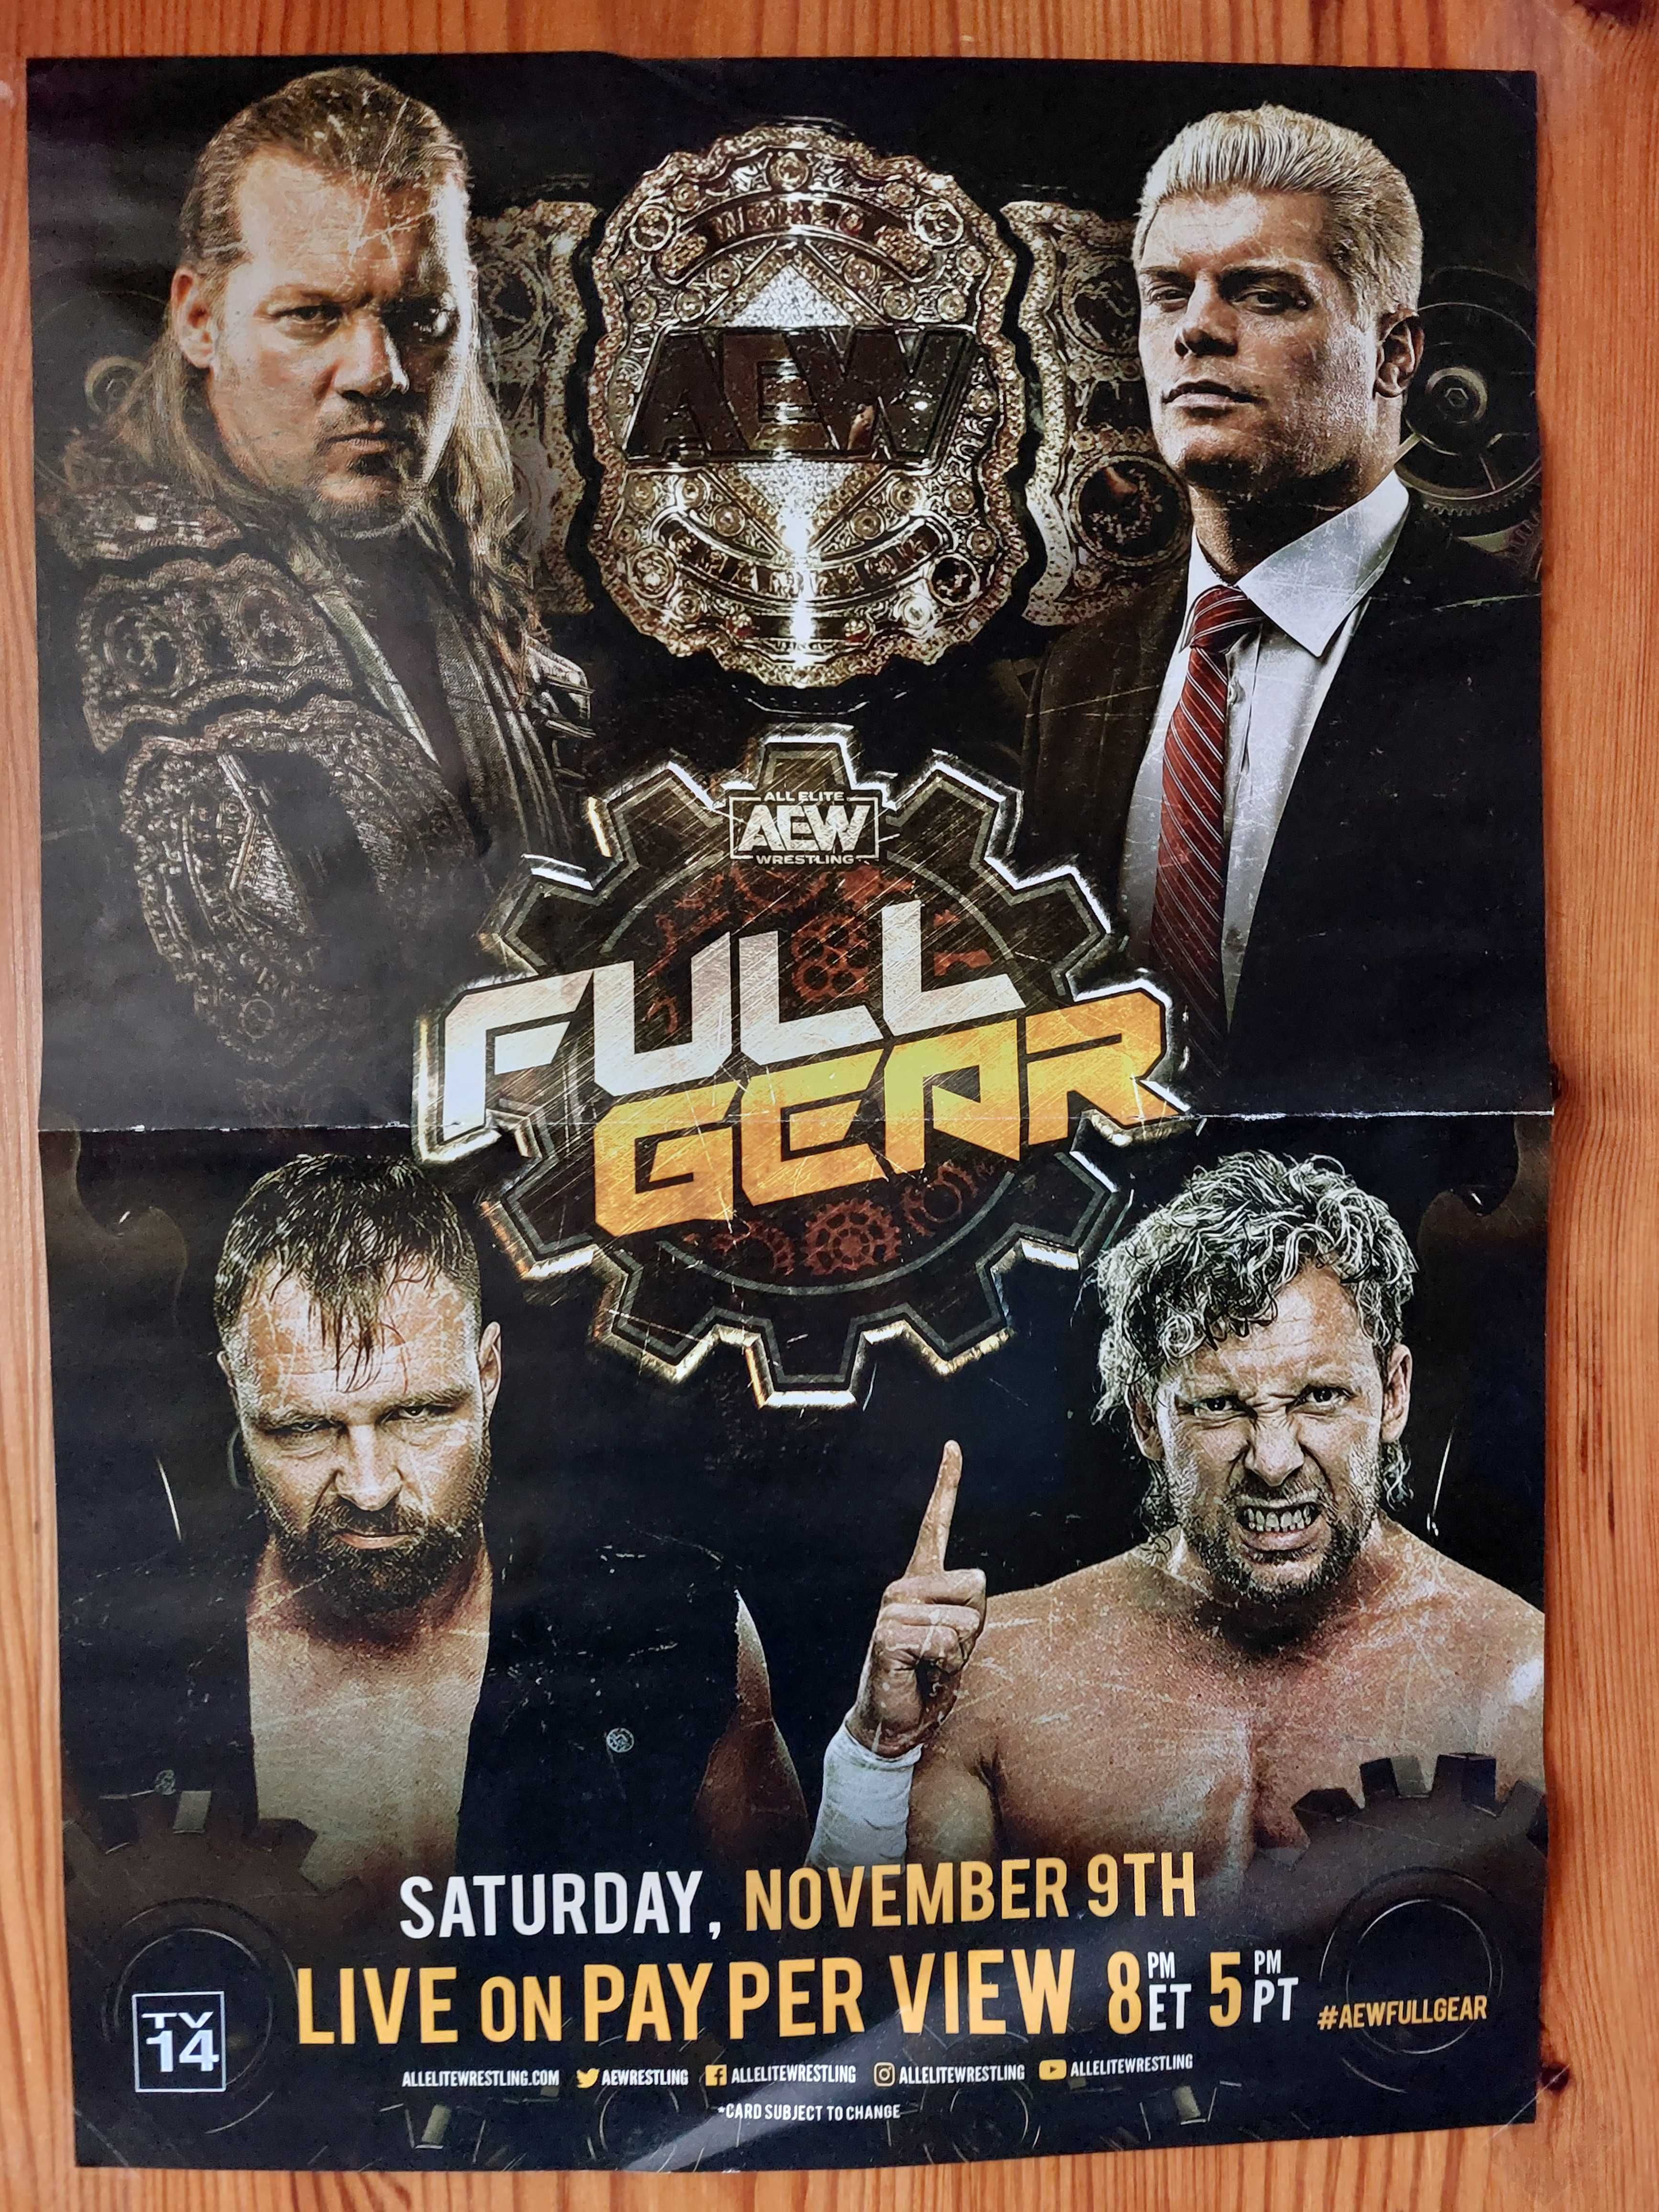 Plakat zapowiadający pierwszą galę wrestlingową AEW - Full Gear